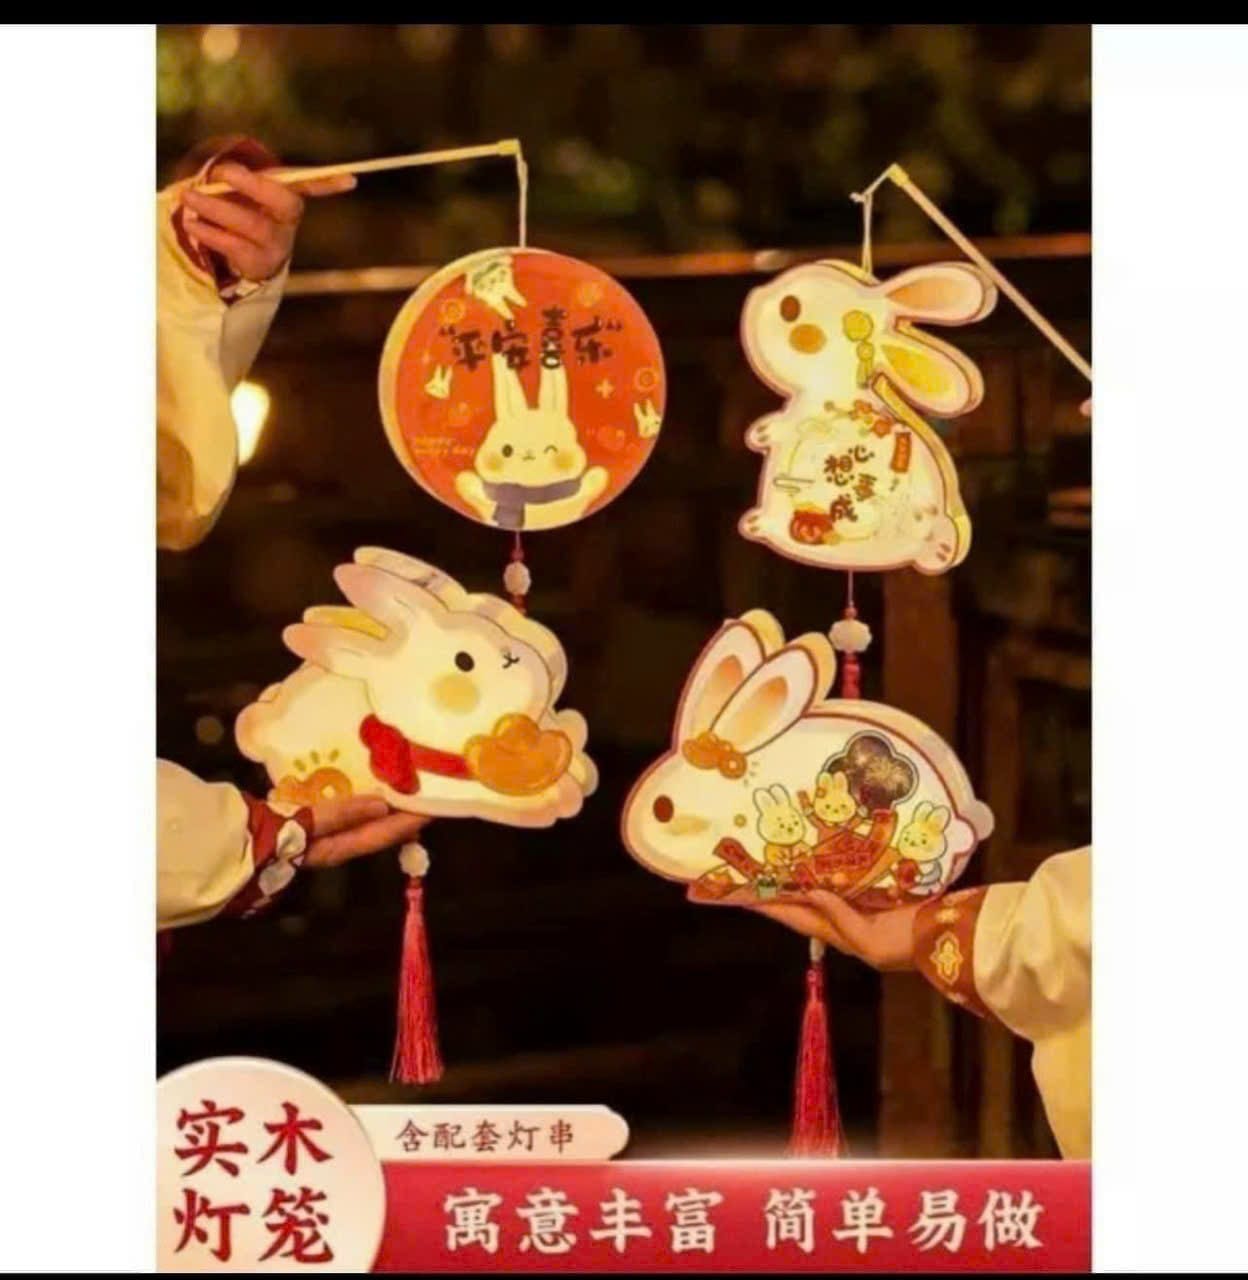 Đèn lồng giấy handmade hình thỏ, chị hằng độc đáo và sáng tạo thích hợp trang trí, quà tặng, Trung thu (tự lắp ráp, có video hướng dẫn)